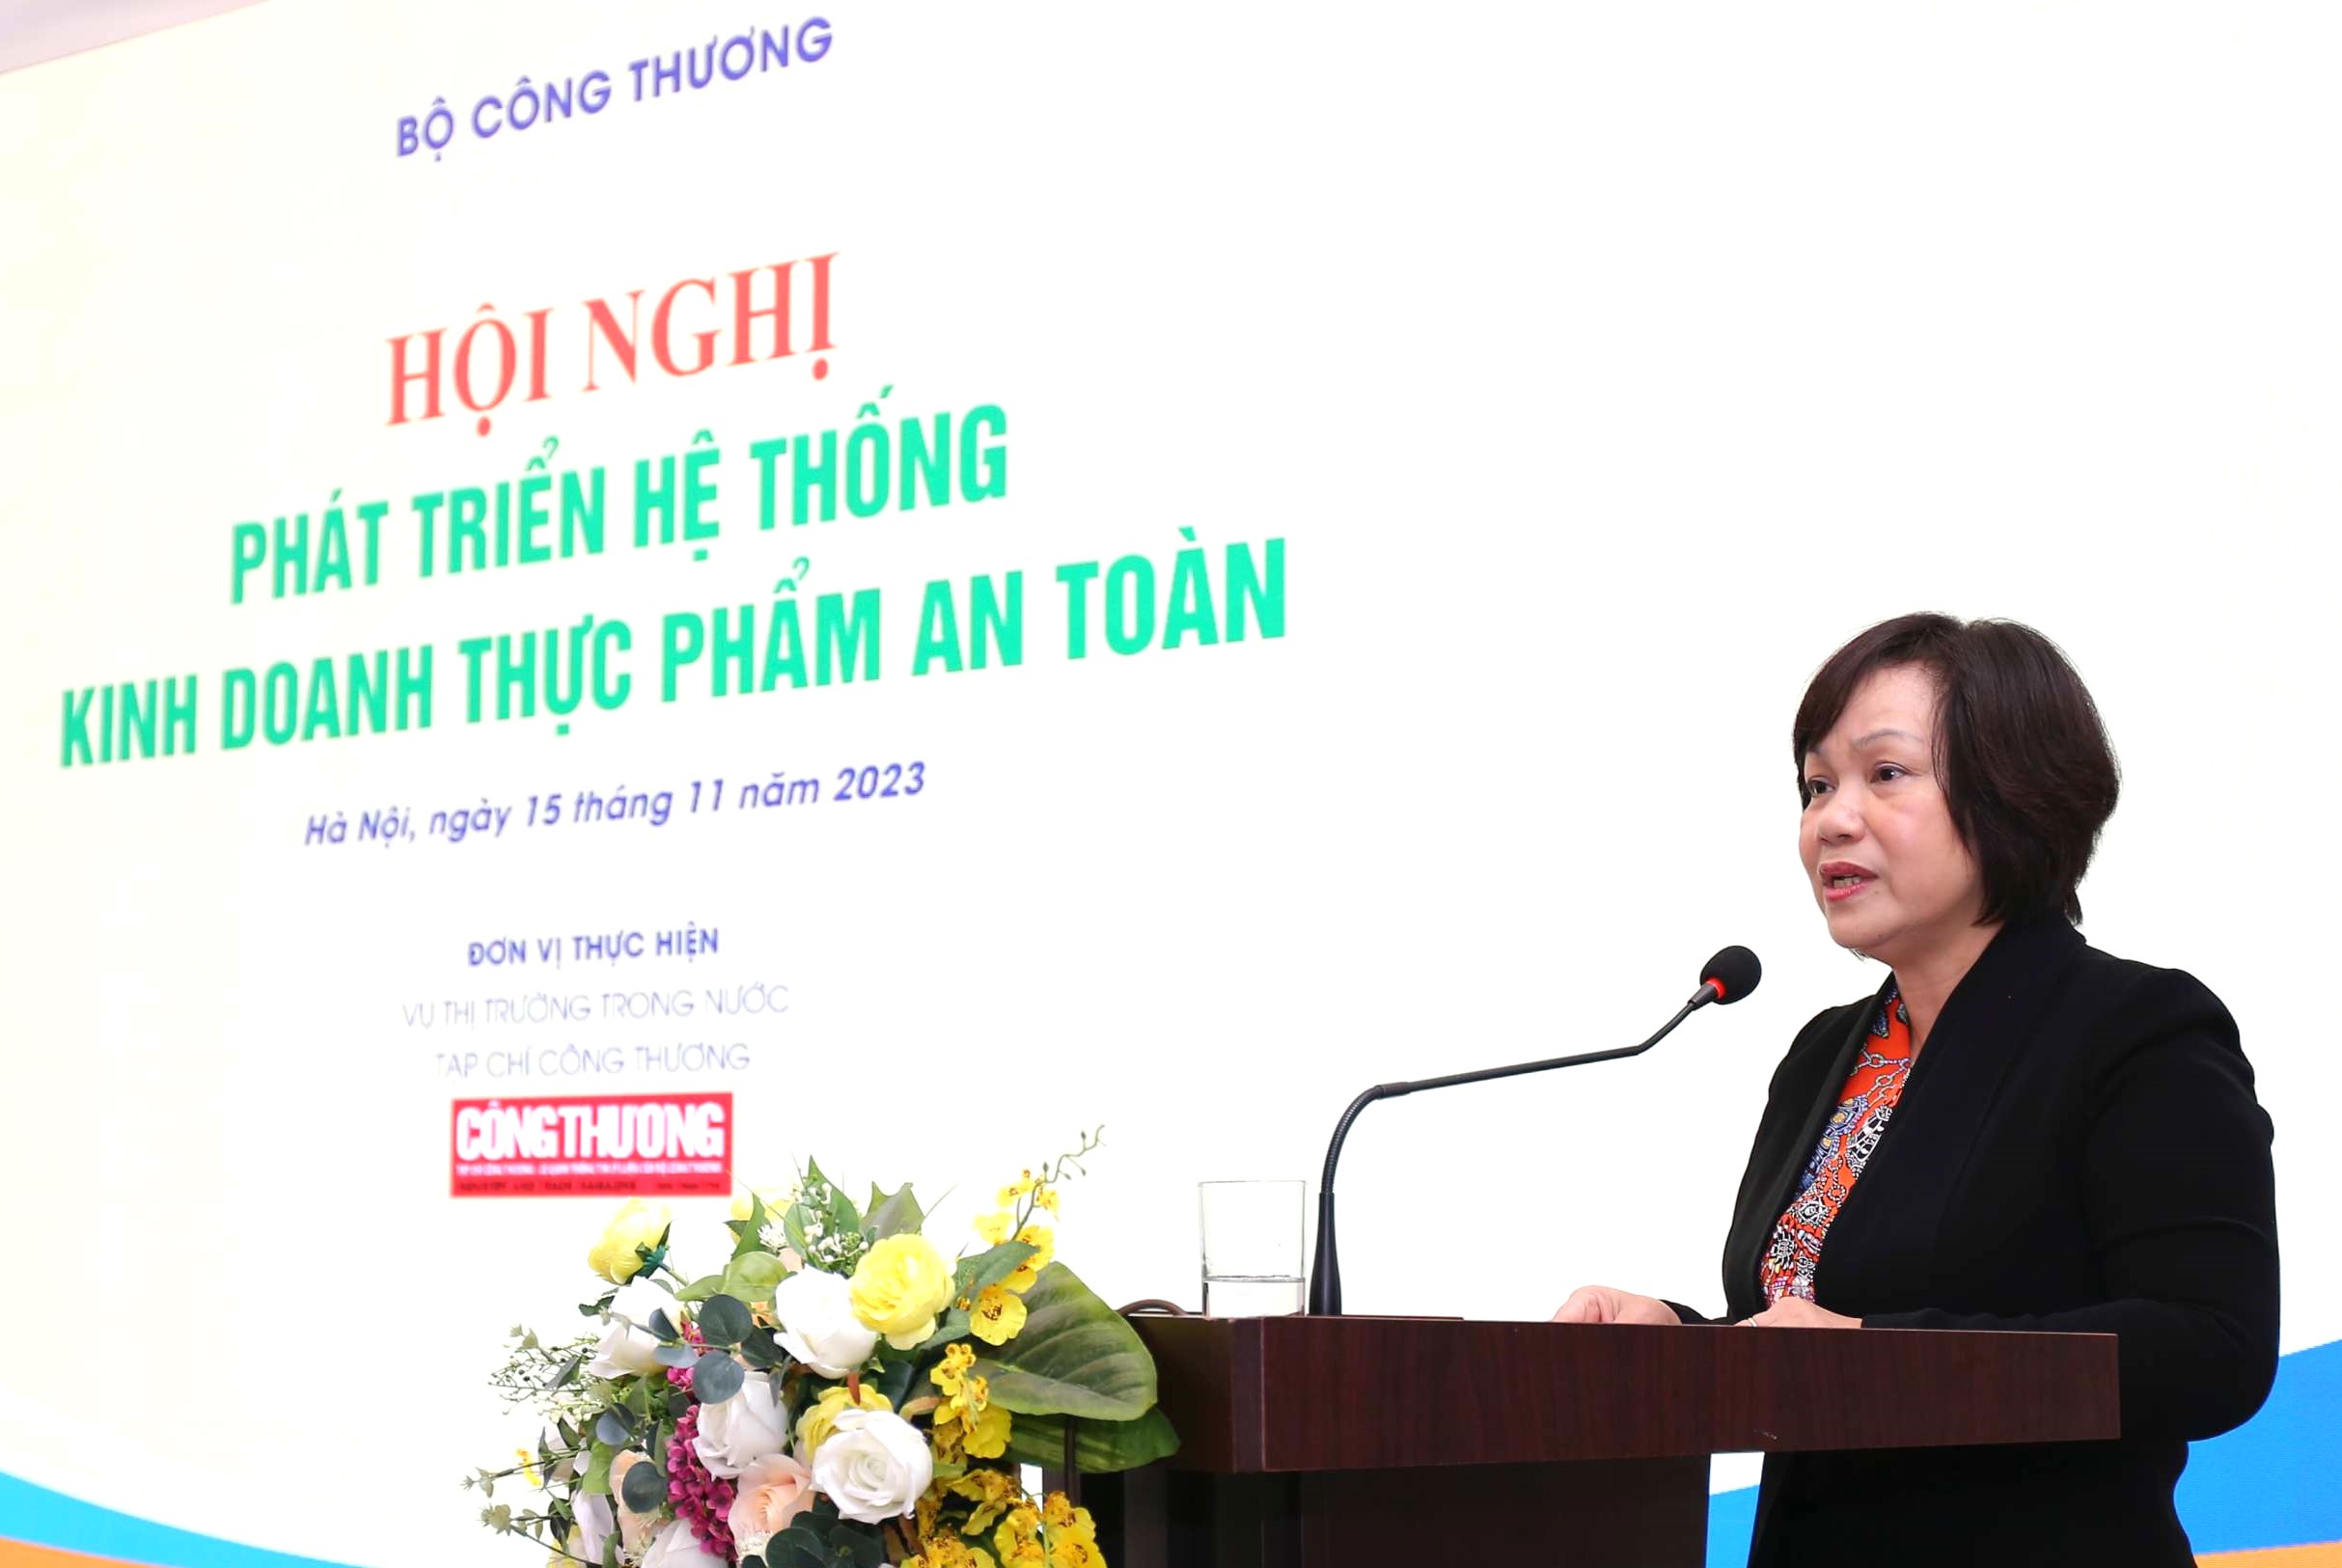 Bà Lê Việt Nga - Phó Vụ trưởng Vụ Thị trường trong nước, Bộ Công Thương phát biểu tại Hội nghị